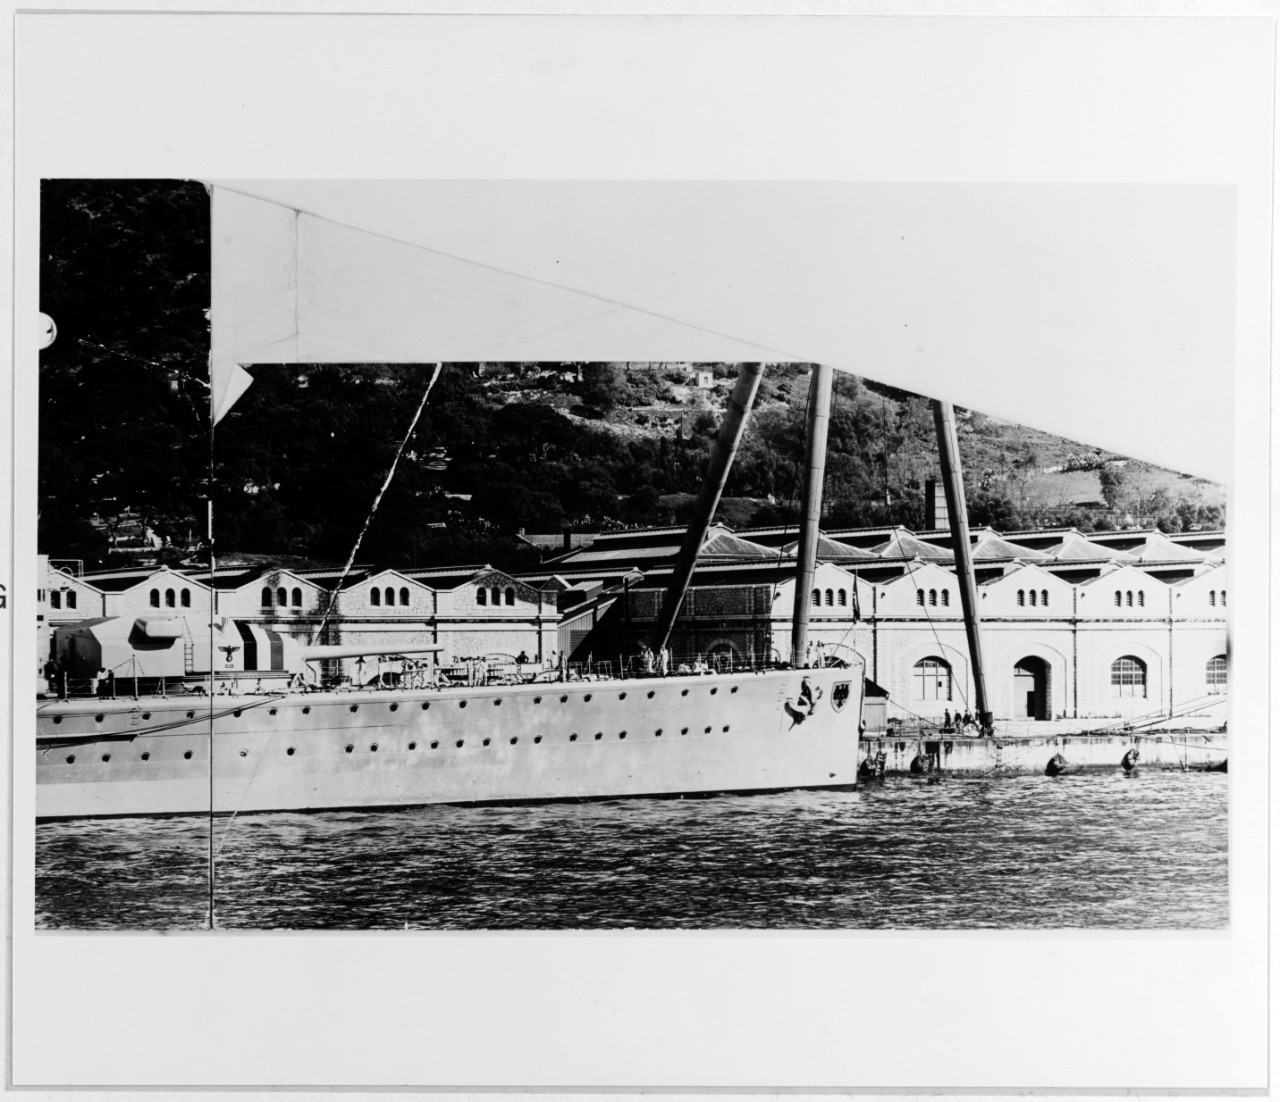 DEUTSCHLAND (German Battleship, 1931)